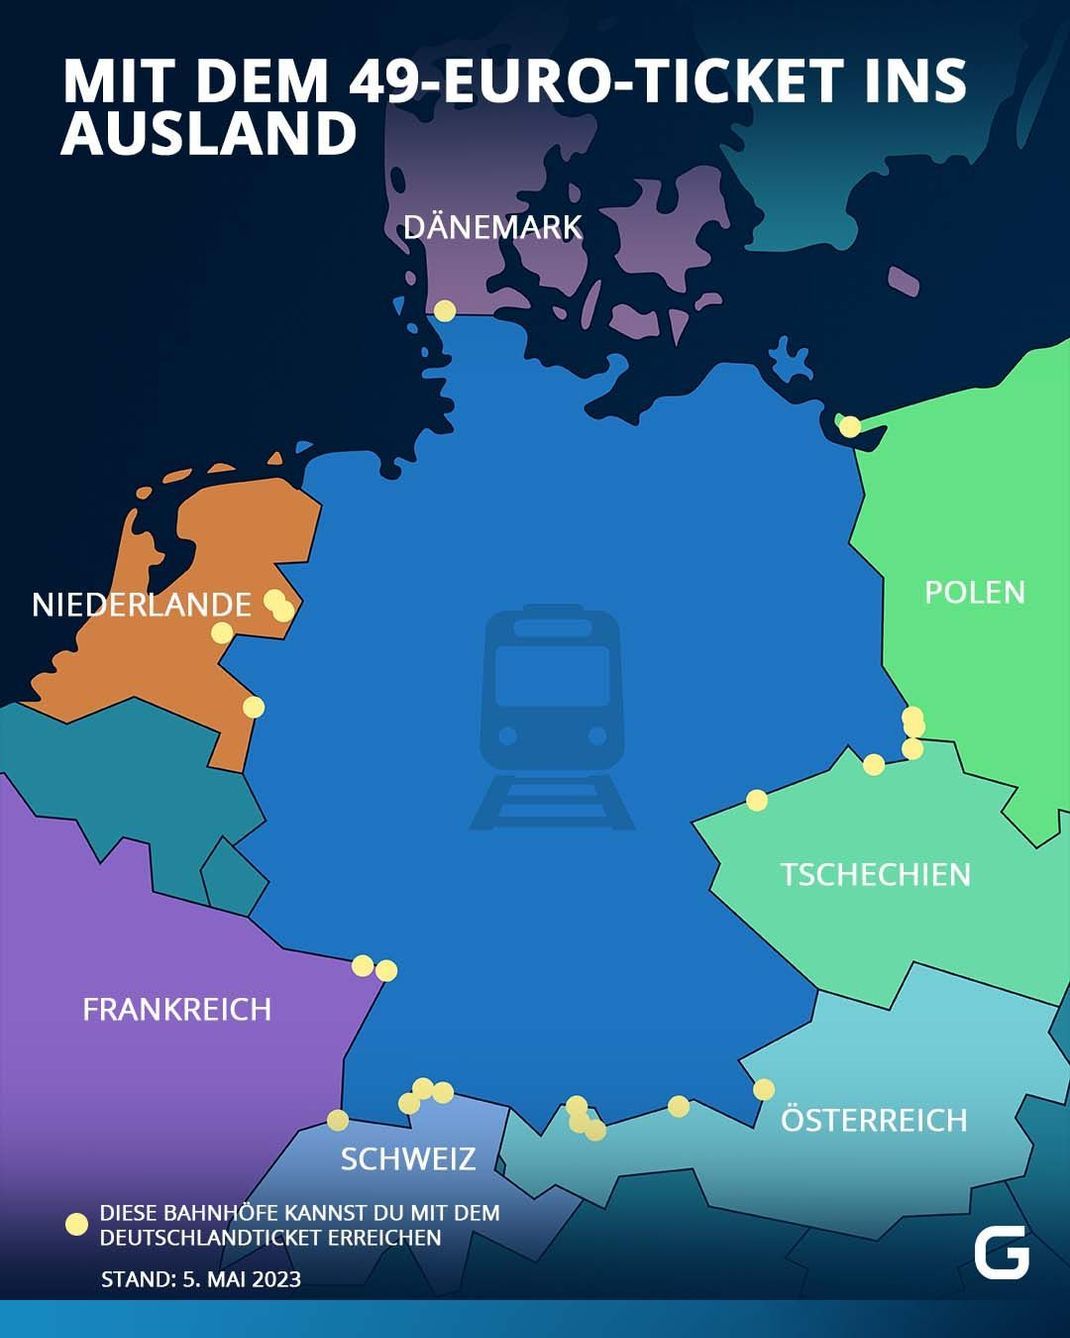 Diese Bahnhöfe kannst du mit dem Deutschlandticket erreichen